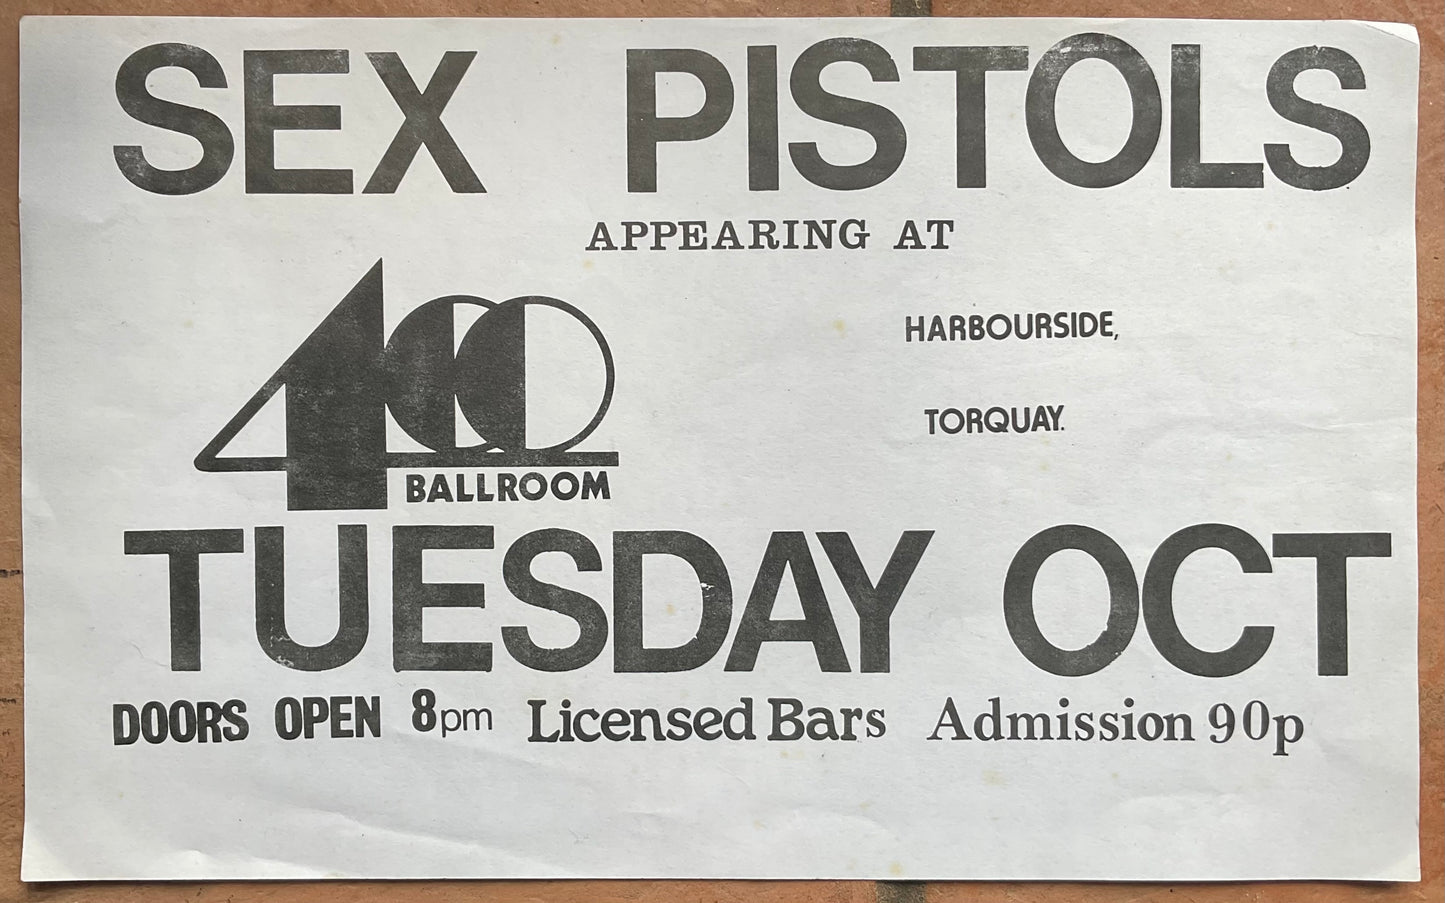 Sex Pistols Original Concert Handbill Flyer 400 Ballroom Club Torquay 1976